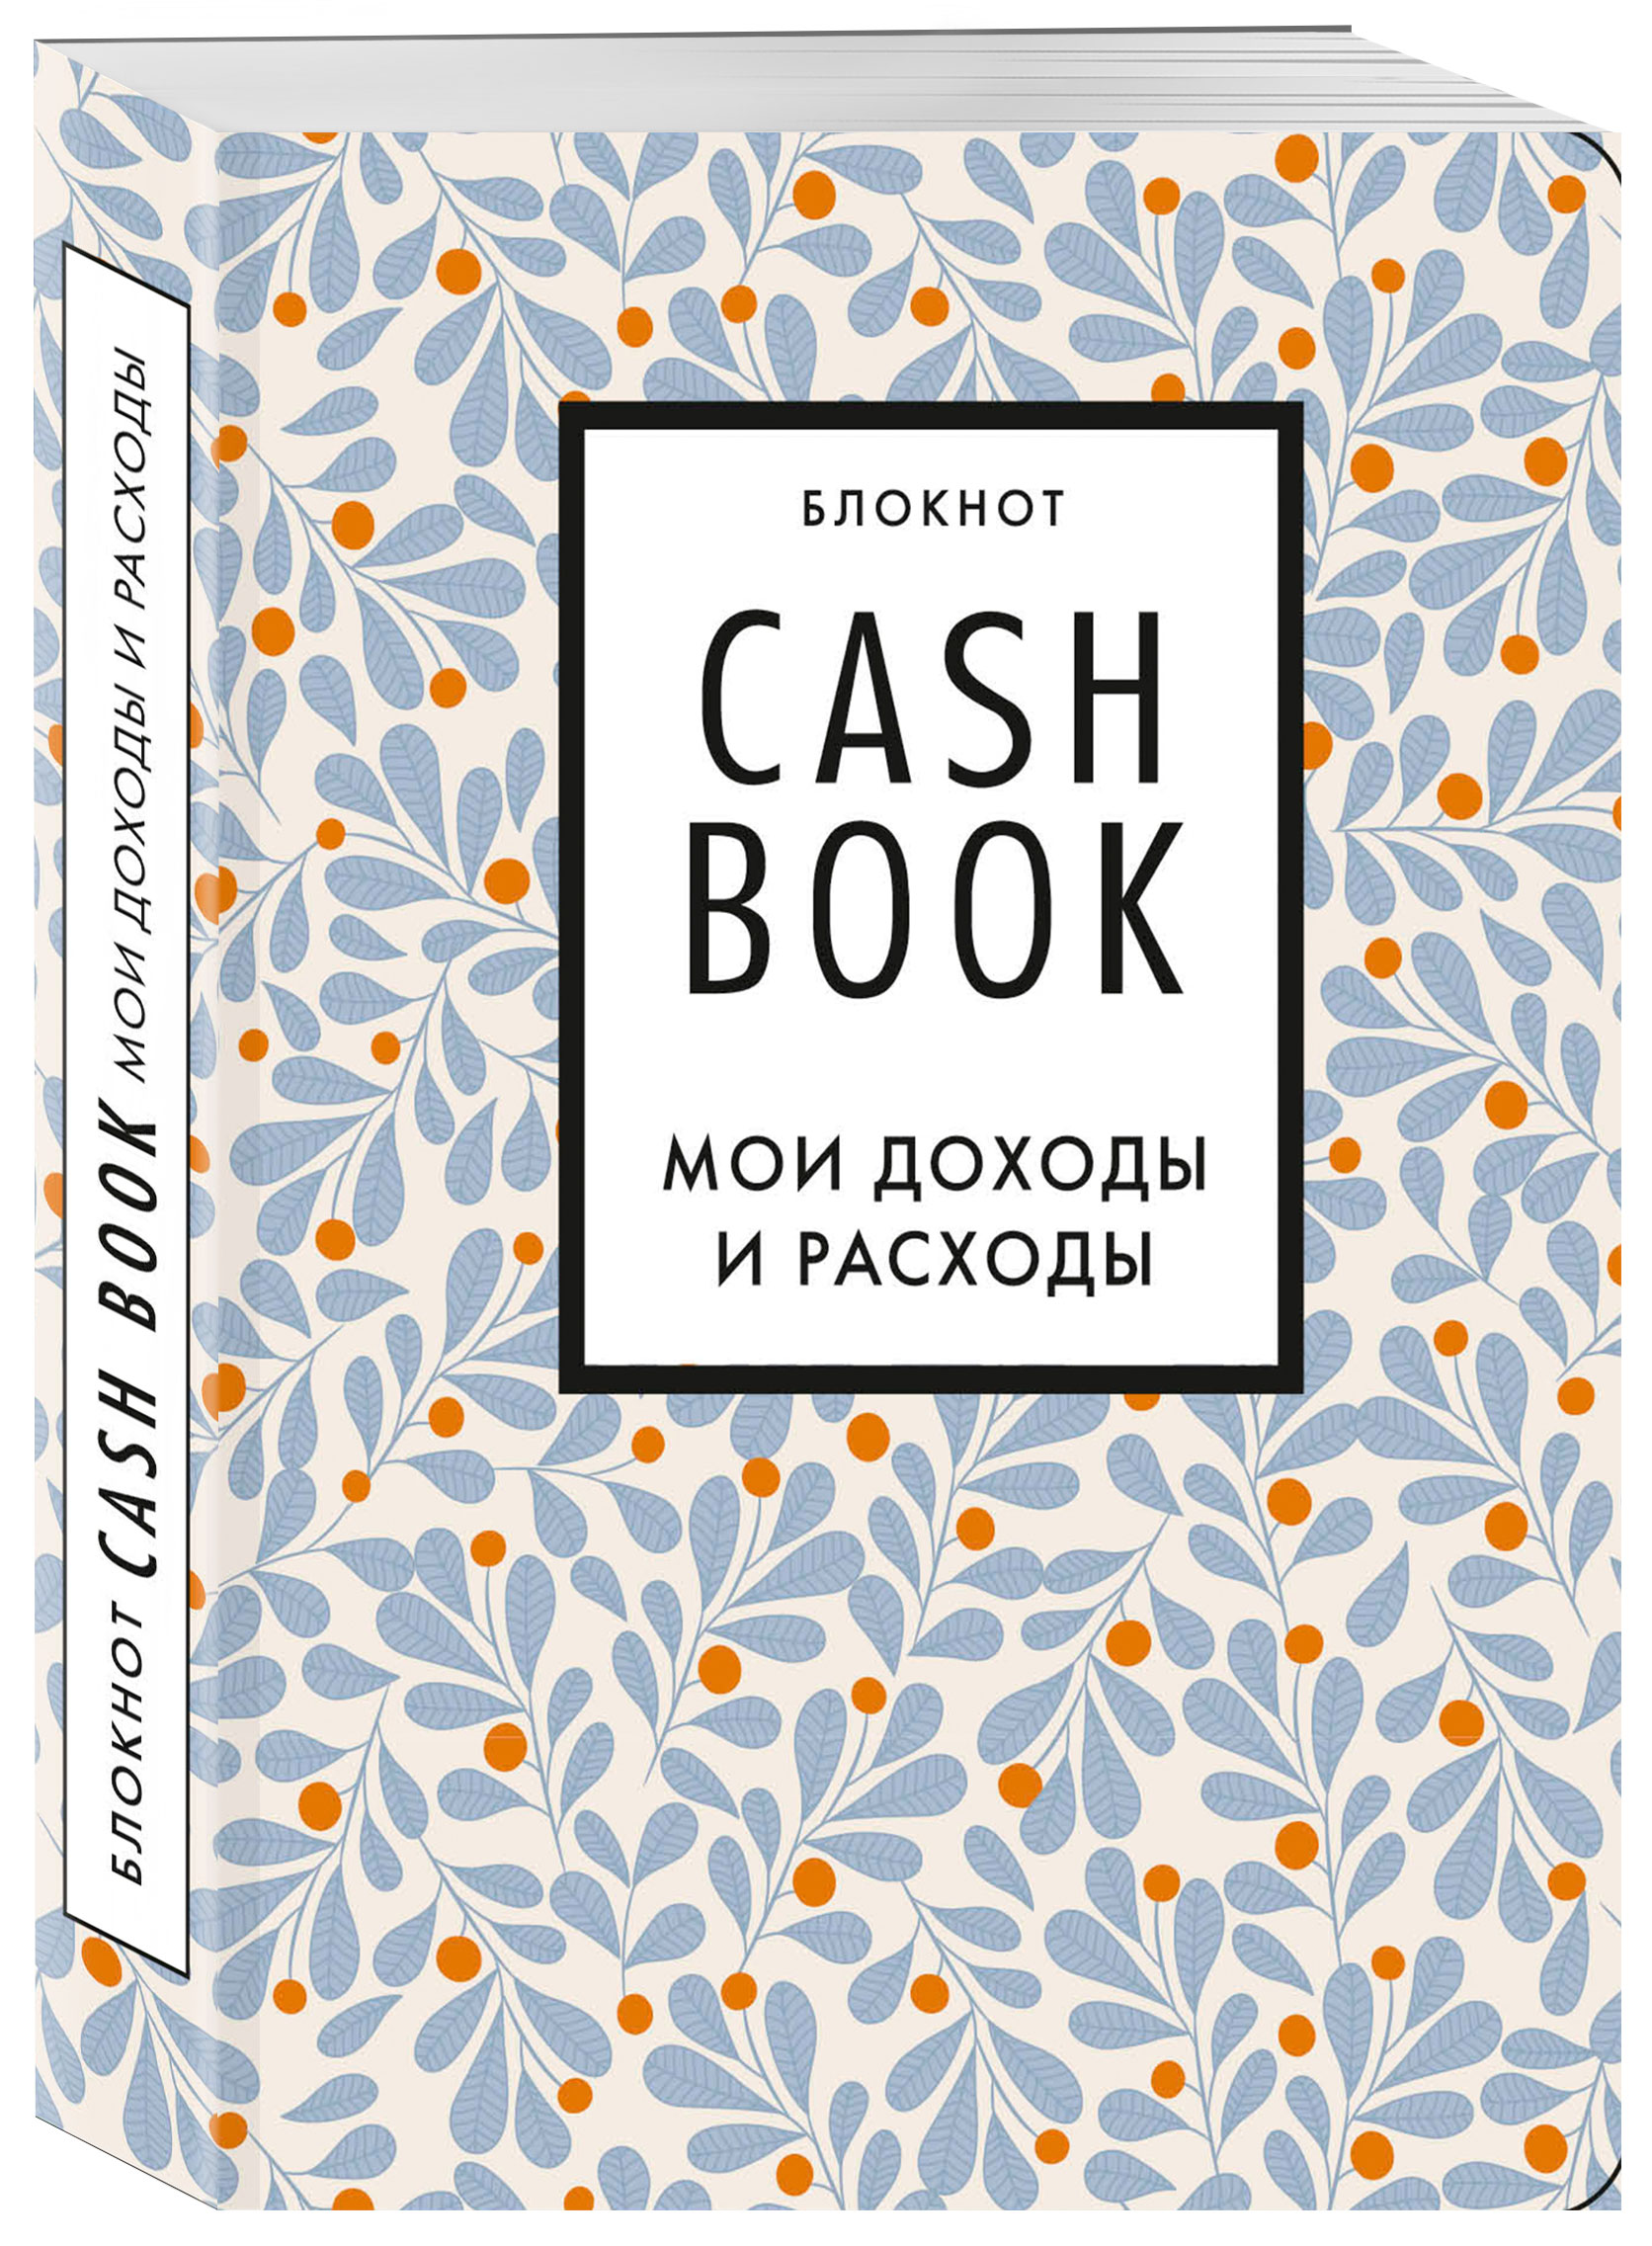 Блокнот CashBook Мои доходы и расходы (7-е издание / Листья)